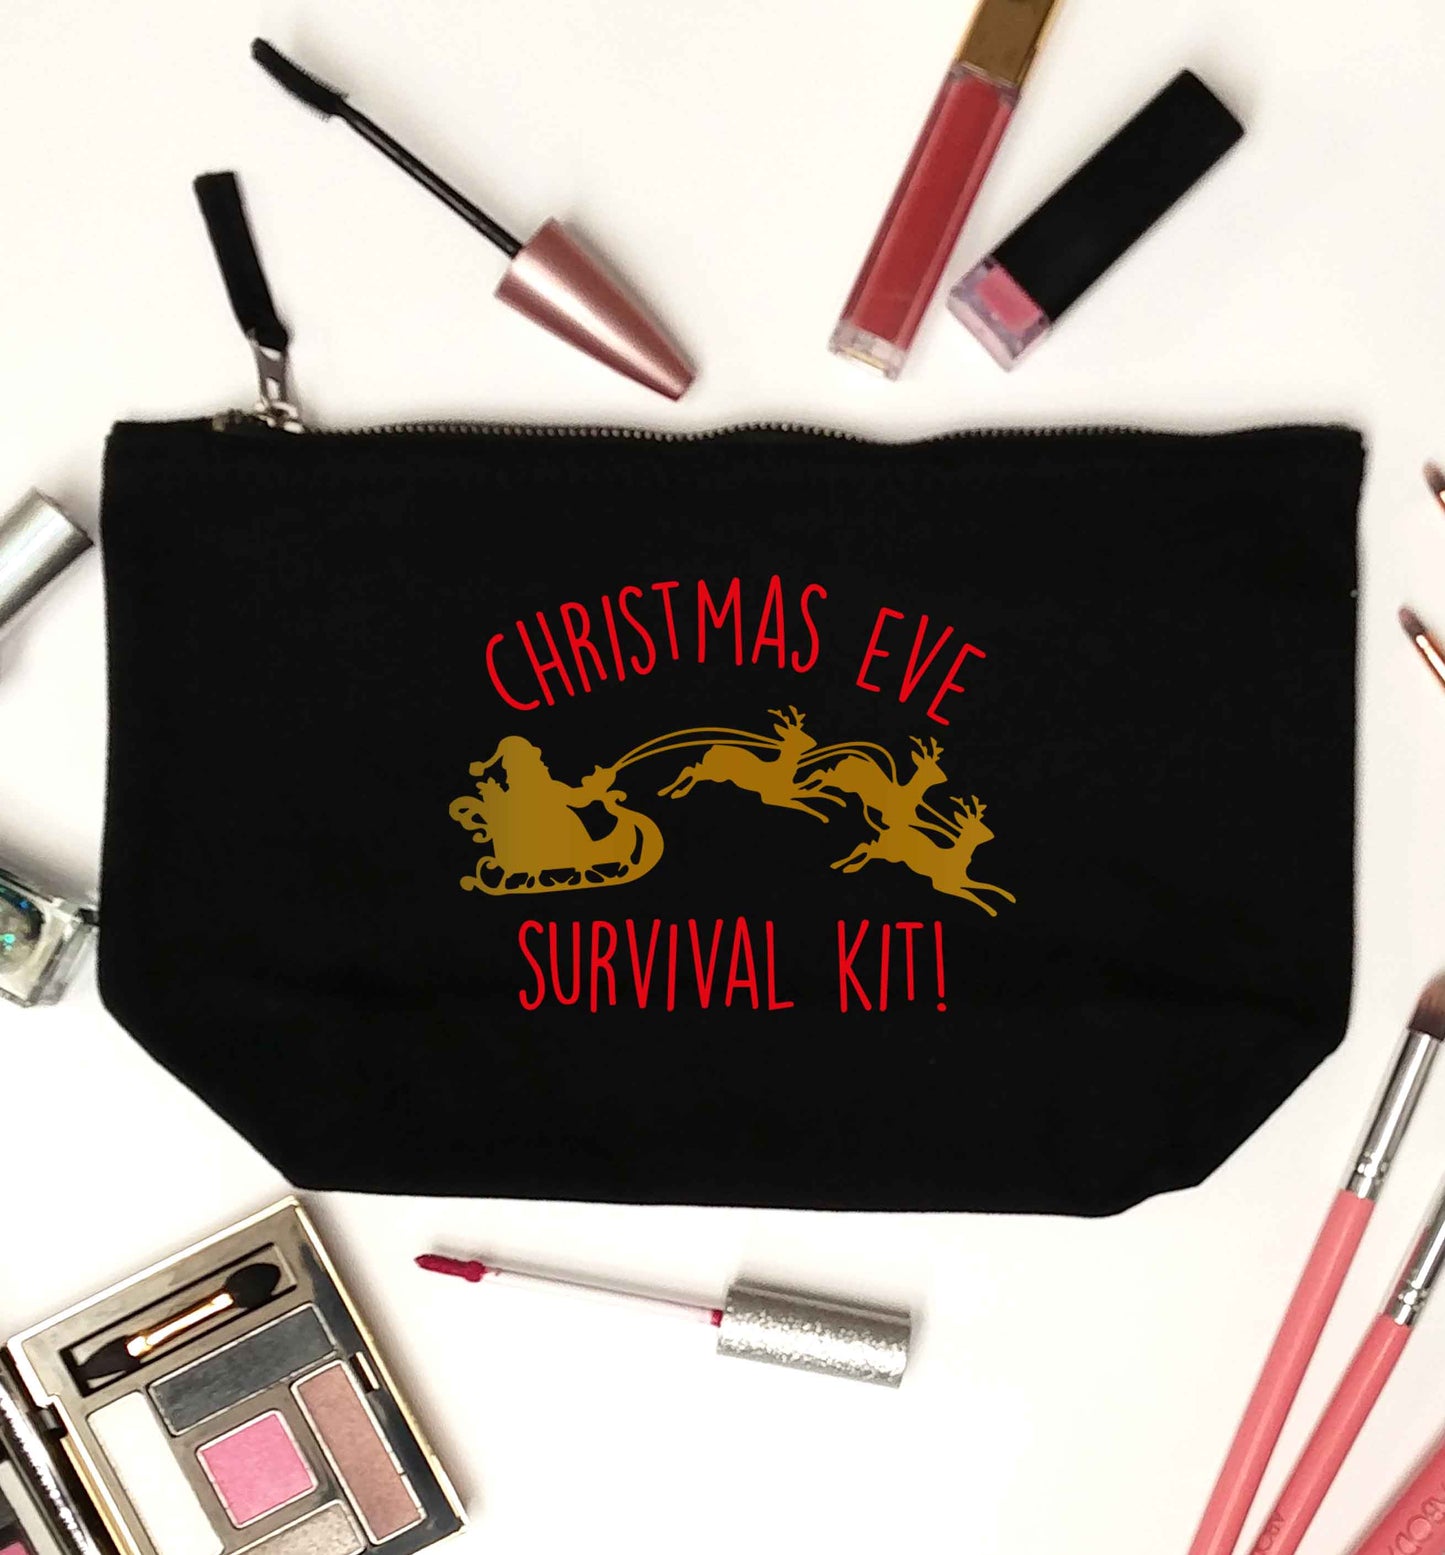 Christmas Day Survival Kitblack makeup bag